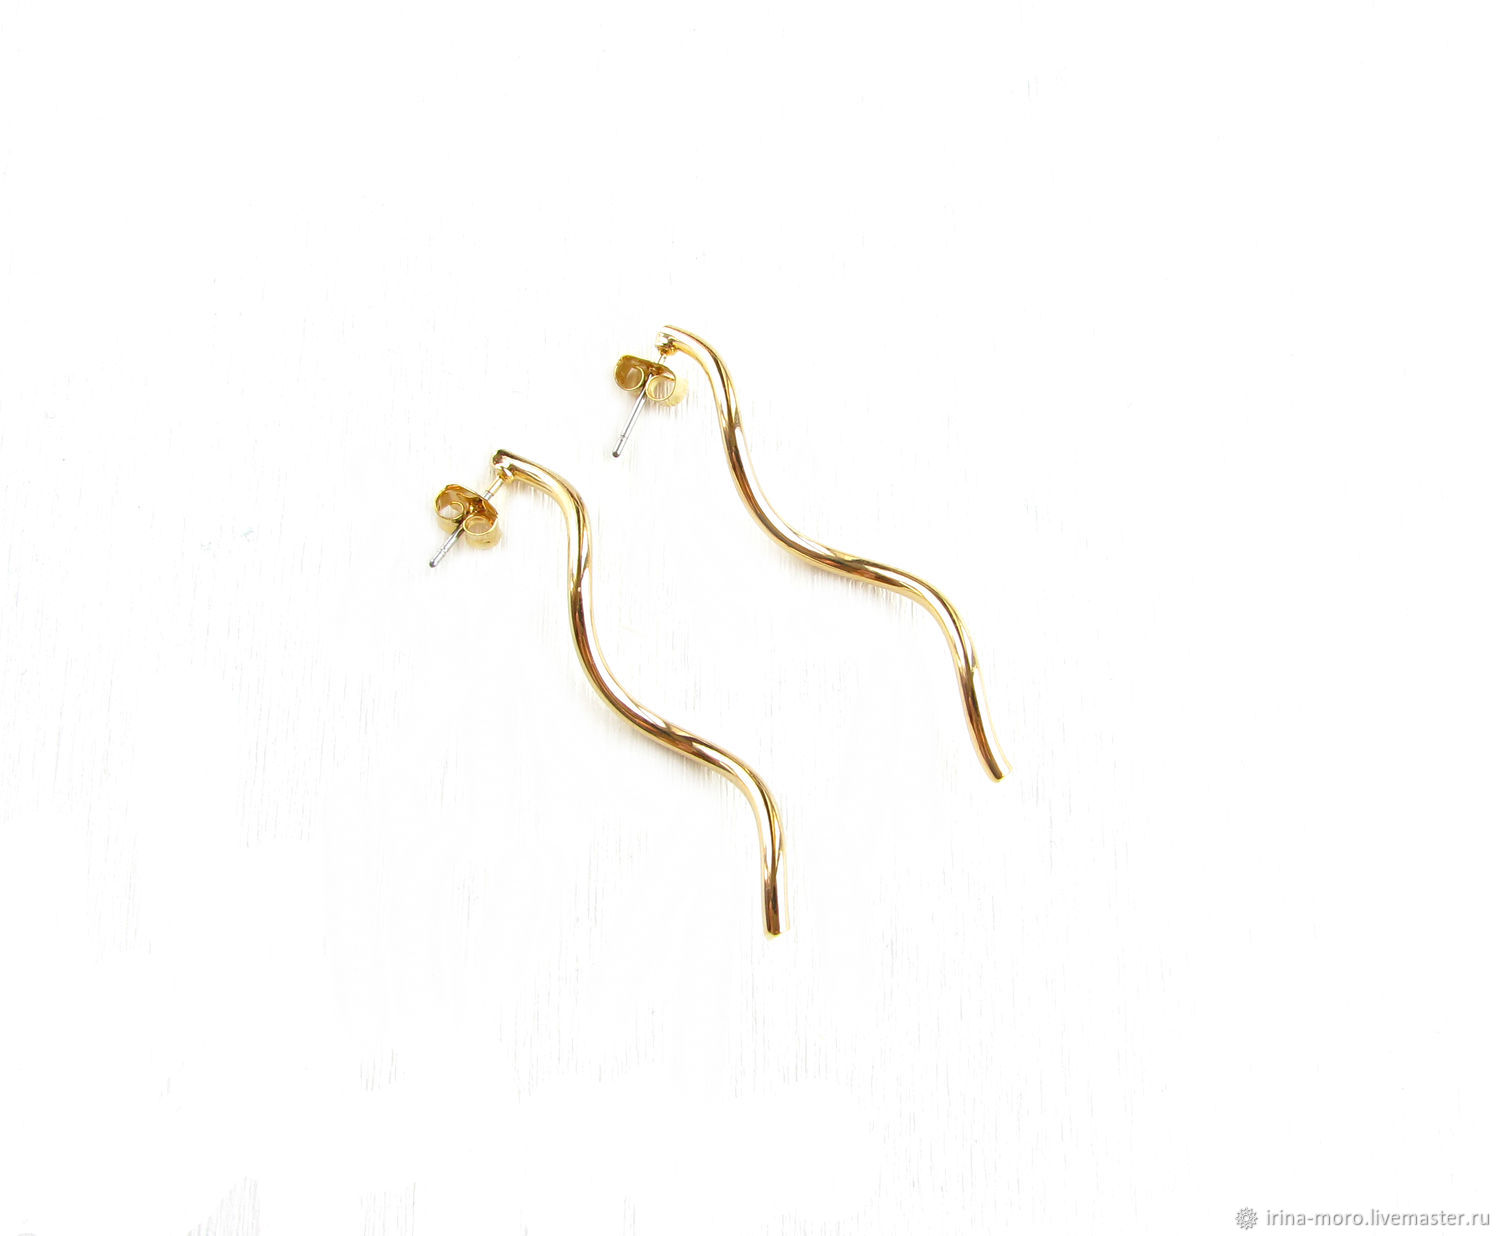 Wand earrings, Long gold earrings, dangle earrings – купить на Ярмарке ...